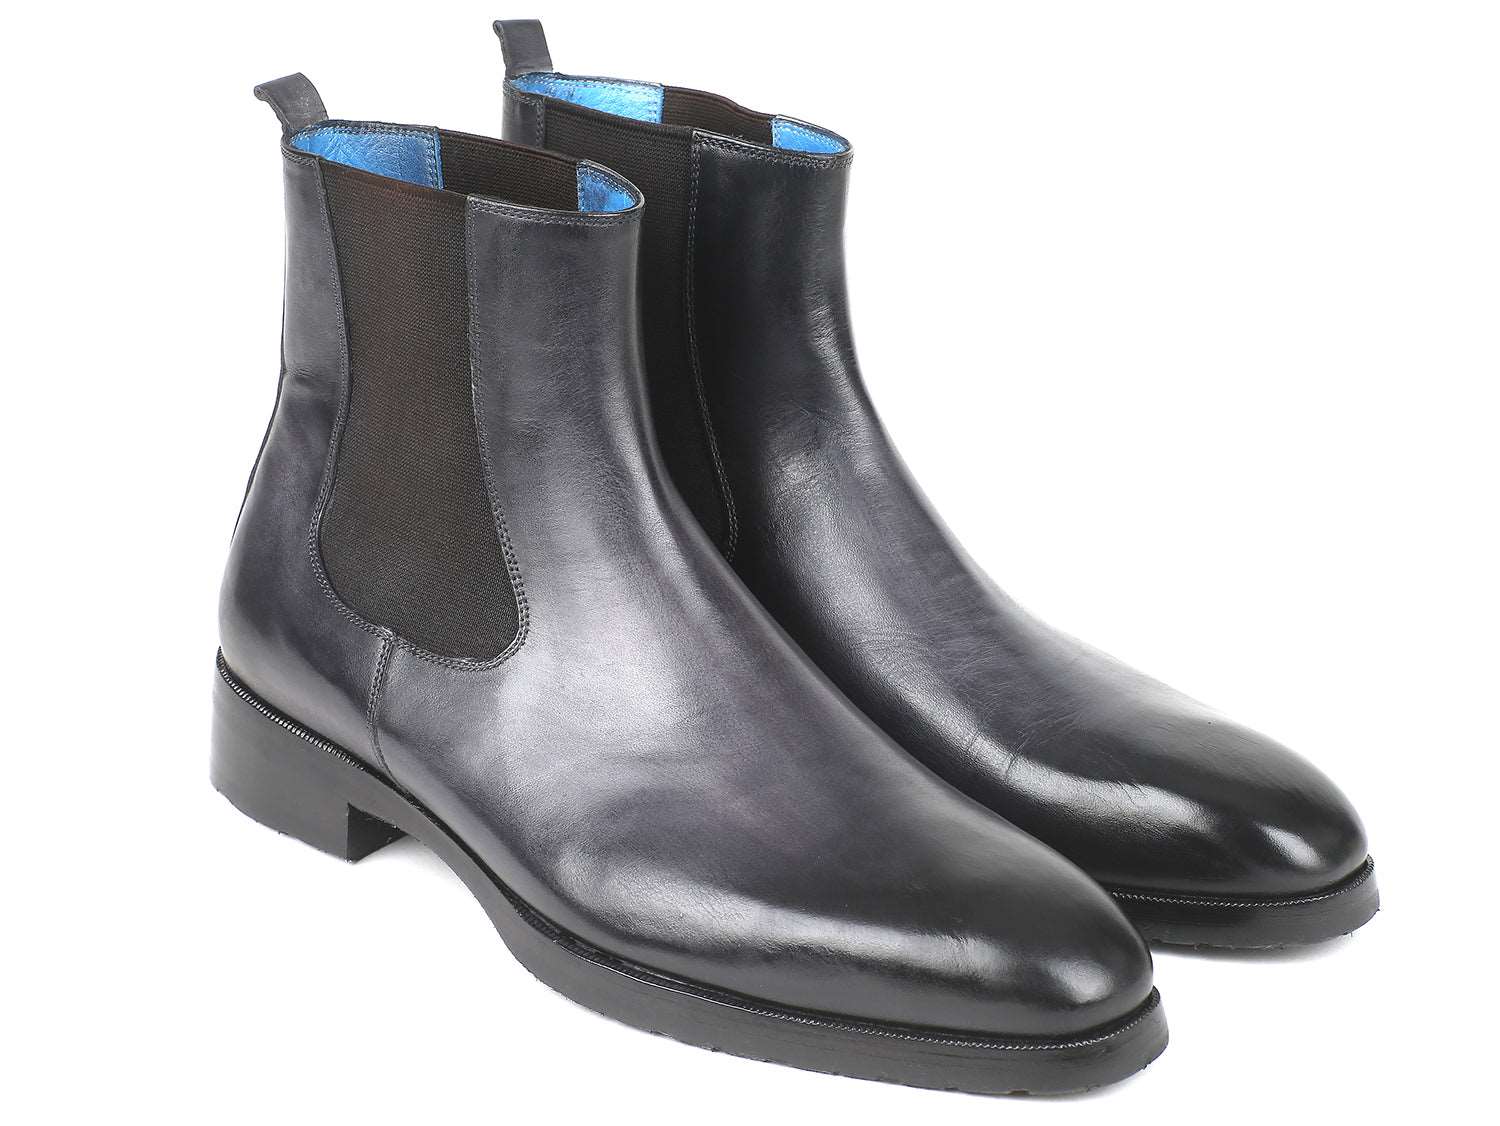 VARNISHED BLACK LEATHER ANKLE BOOTS FOR MEN Formal boots for men